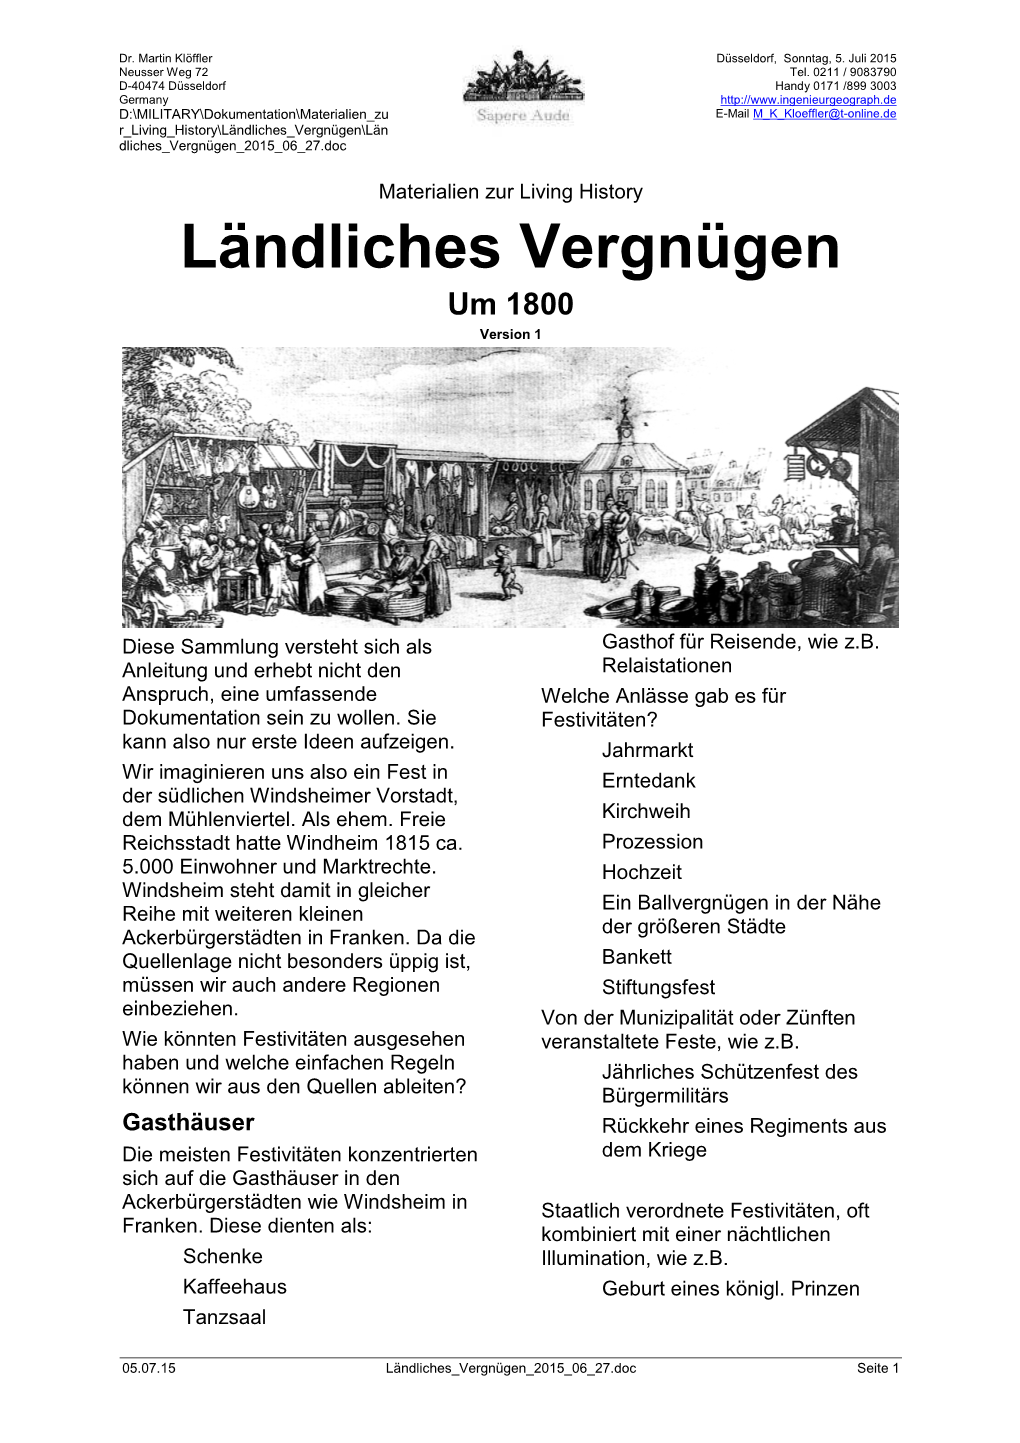 Ländliches Vergnügen Um 1800 Version 1